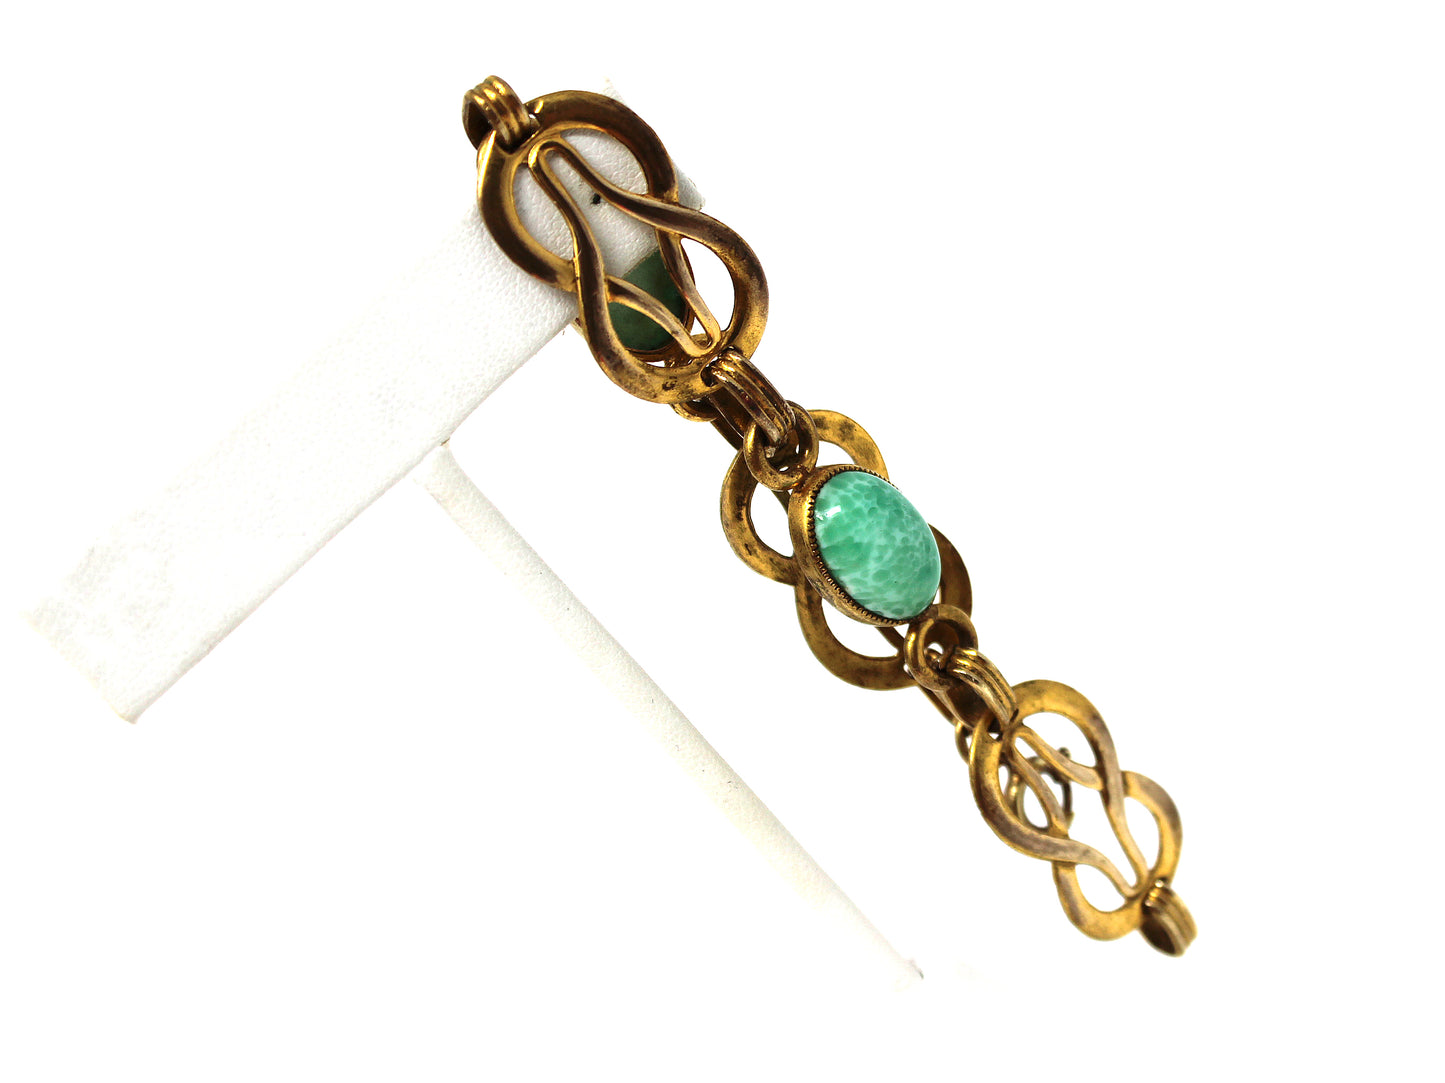 Vintage Celtic Style Link Bracelet with Mottled Green Glass Cabochons